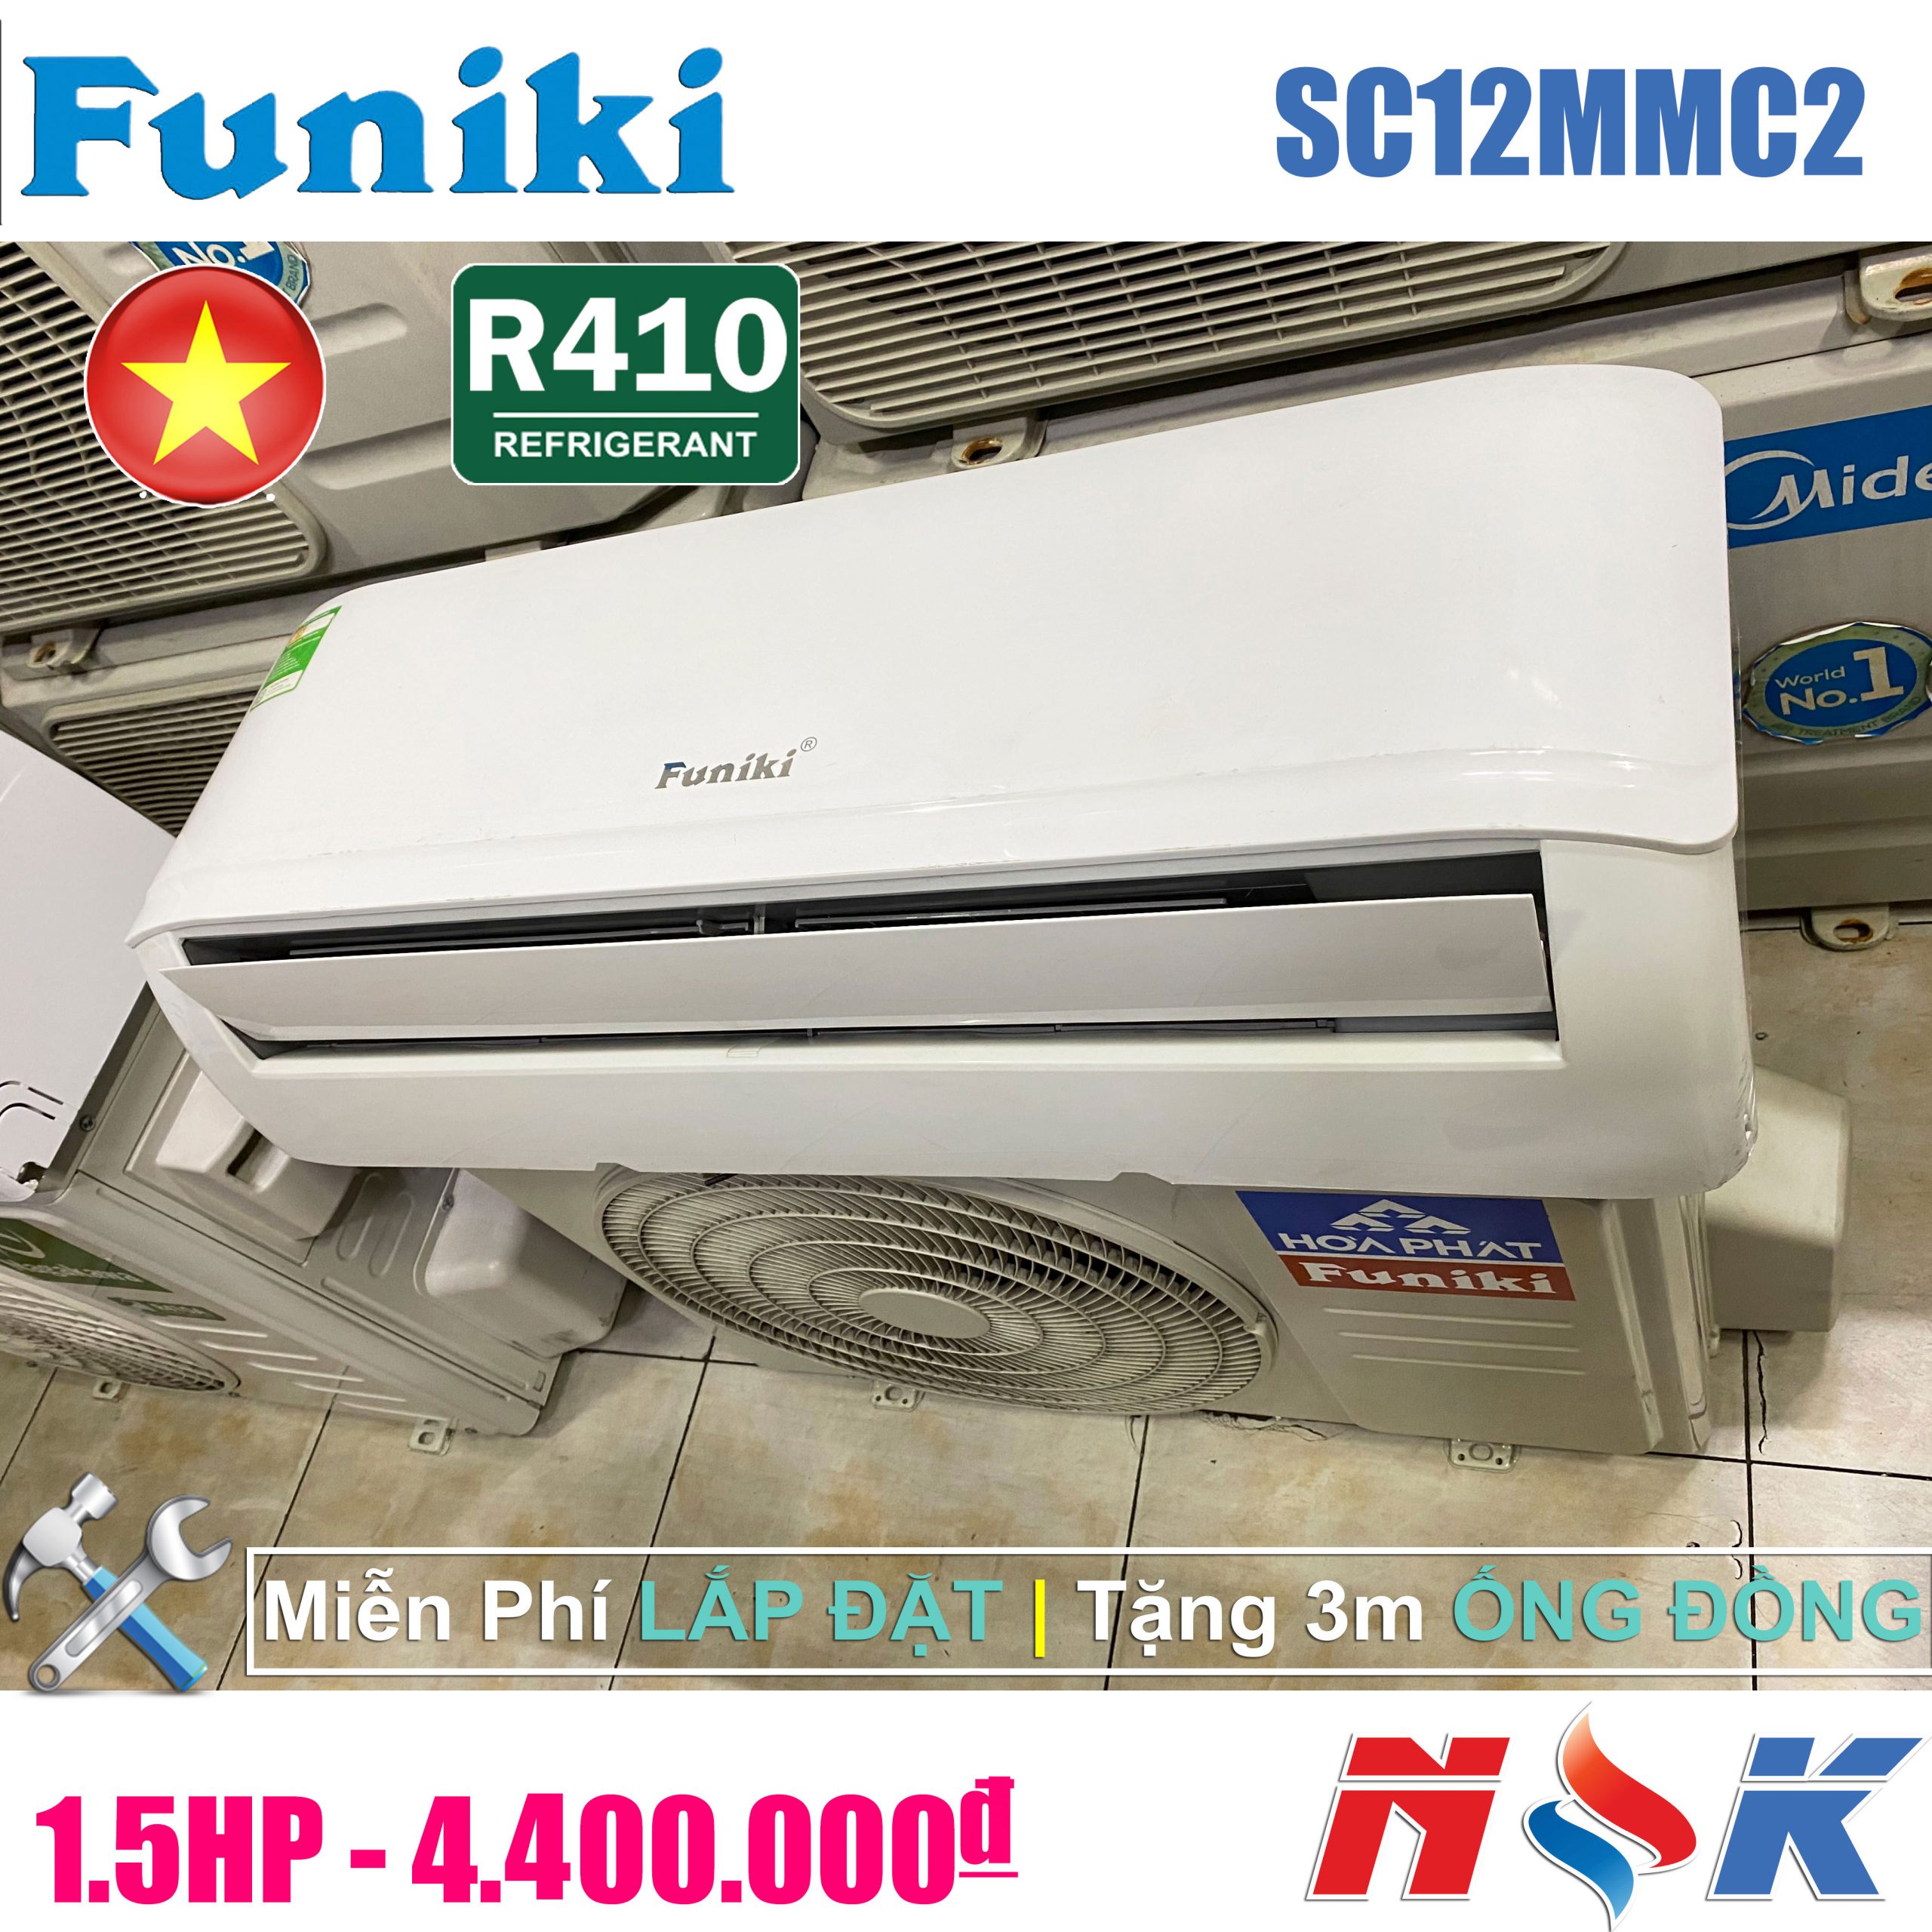 Máy lạnh Funiki SC12MMC2 1.5HP